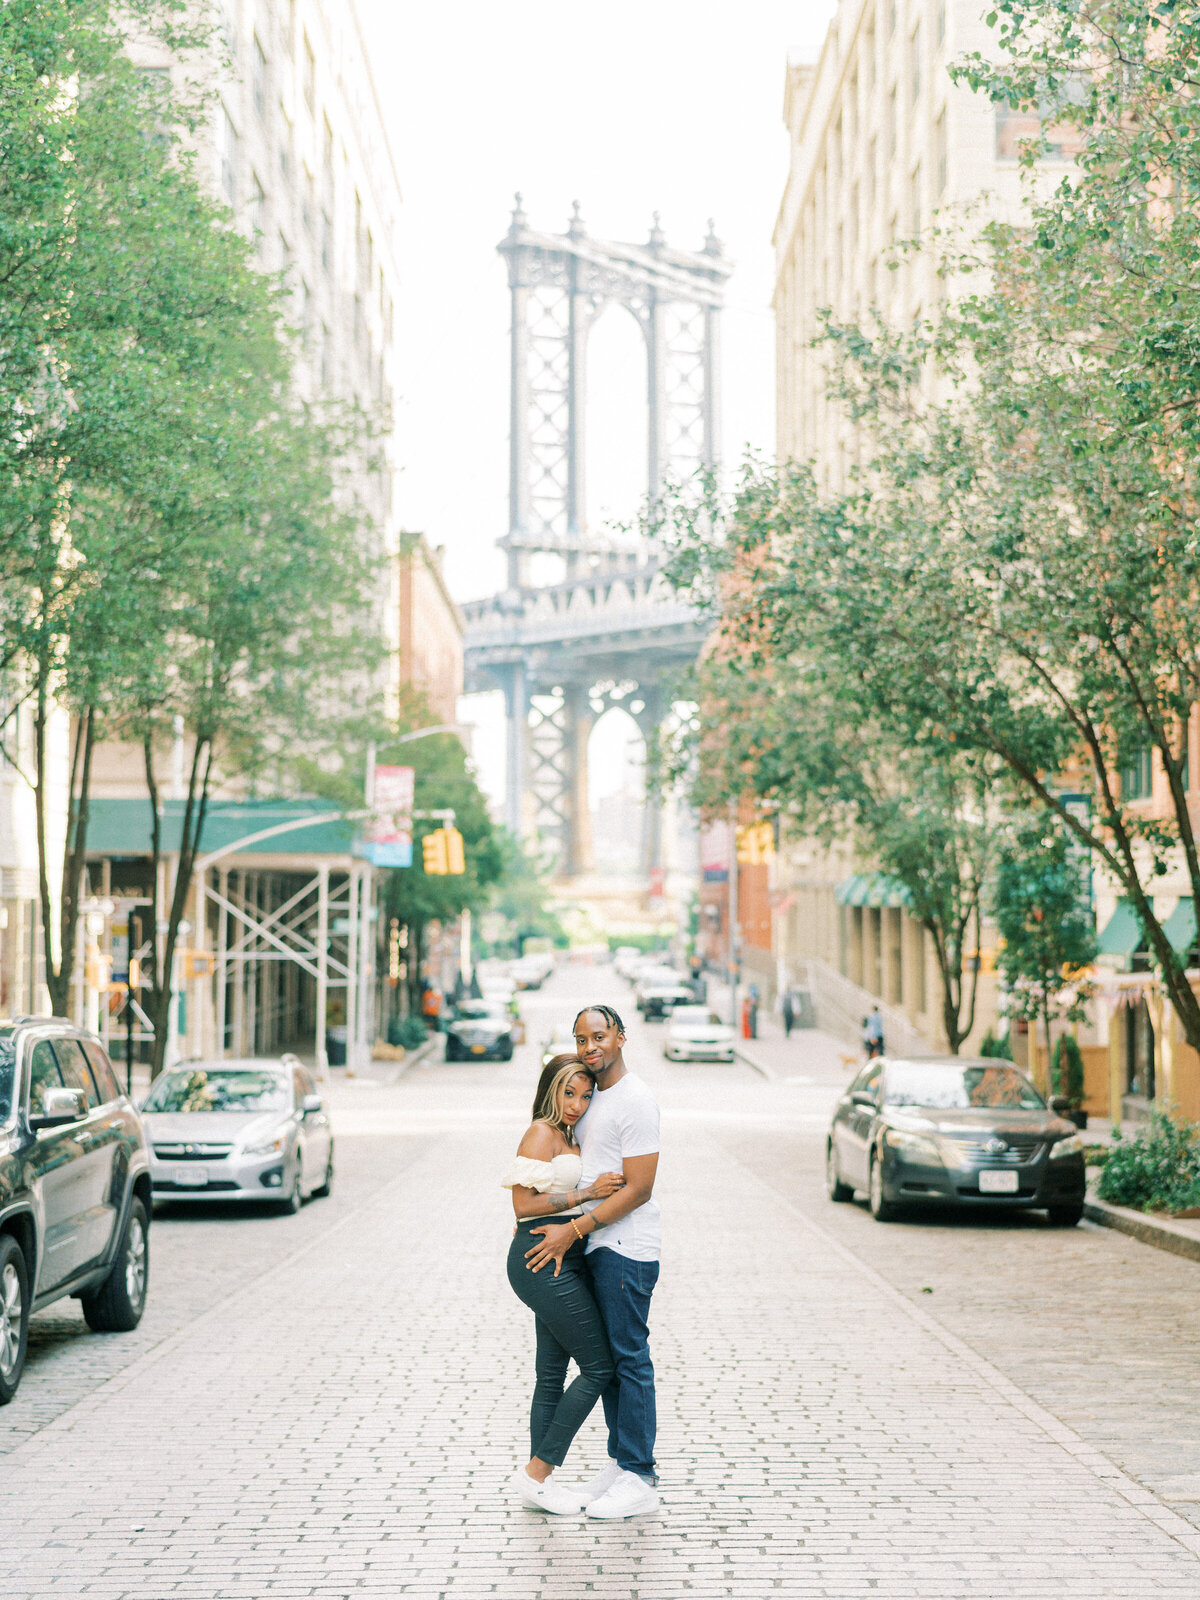 Brooklyn Bridge and DUMBO Sunrise, Engagement Session | Amarachi Ikeji Photography 36